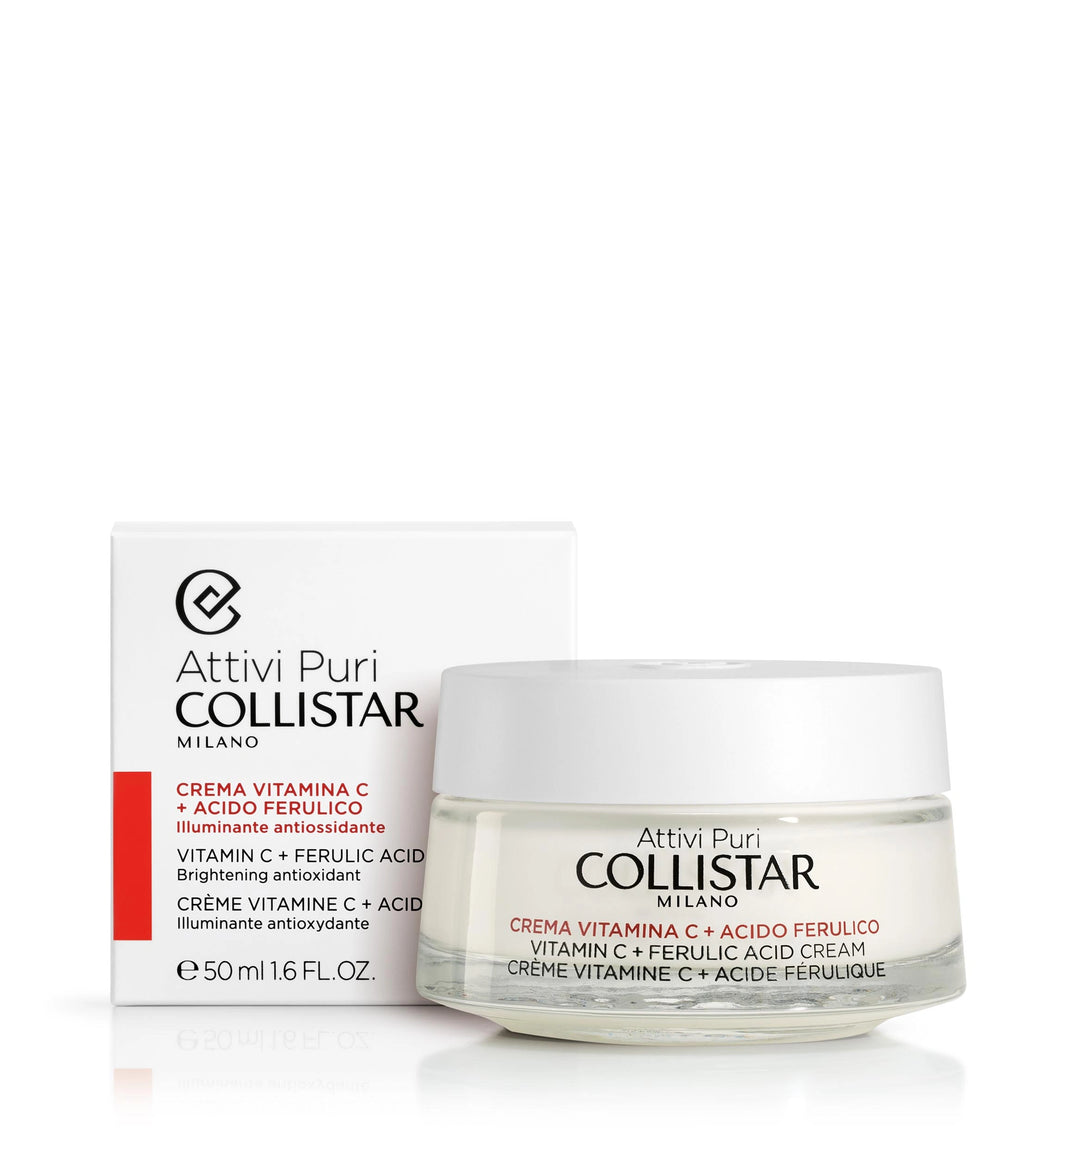 

Collistar Pure Active Vitamin C + Ferulic Acid Brightening Antioxidant Face Cream 50 ml